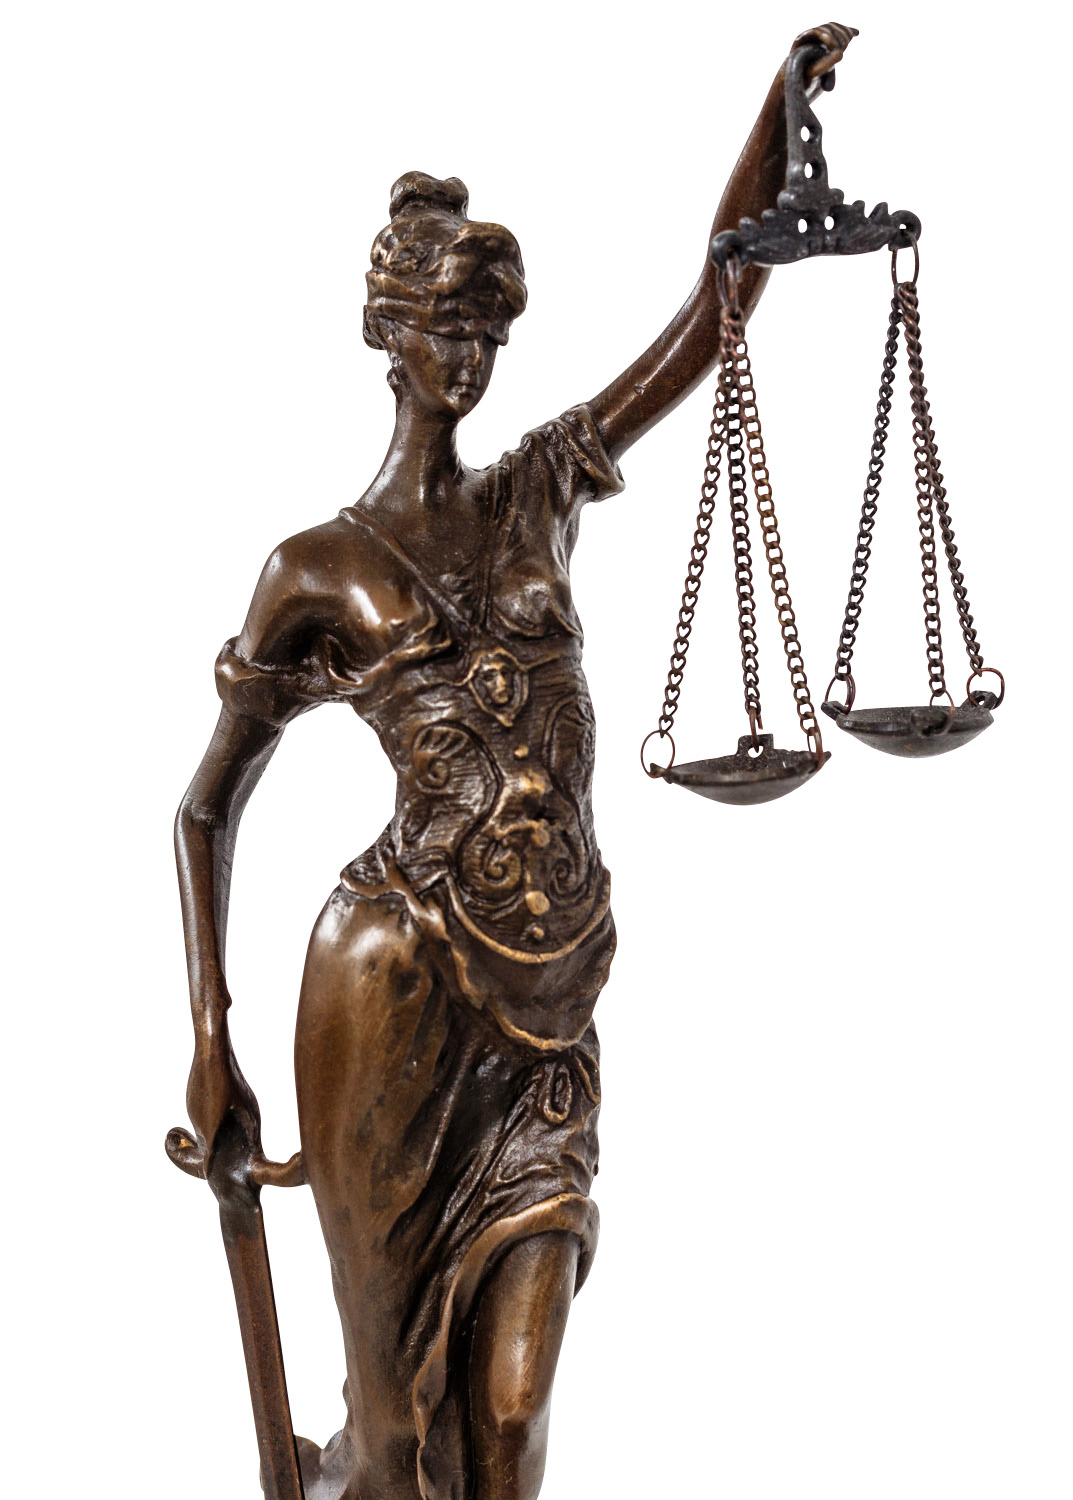 24cm Escultura Justicia de bronce dama de la Justicia estilo antiguo figura